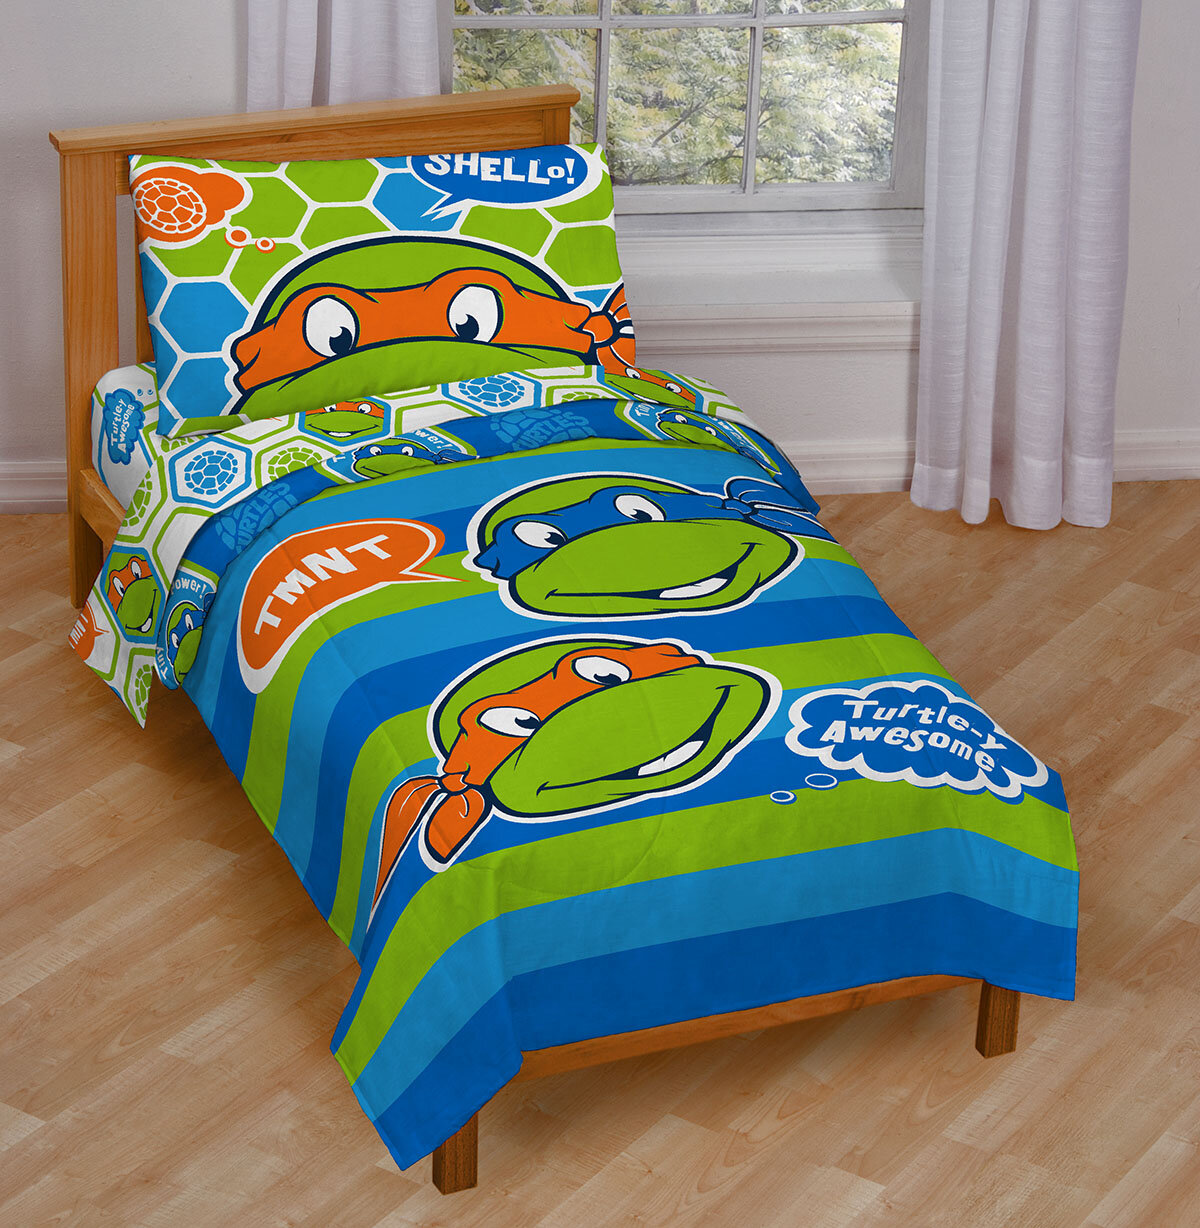 Nickelodeon Teenage Mutant Ninja Turtles Awesome Toddler Bedding